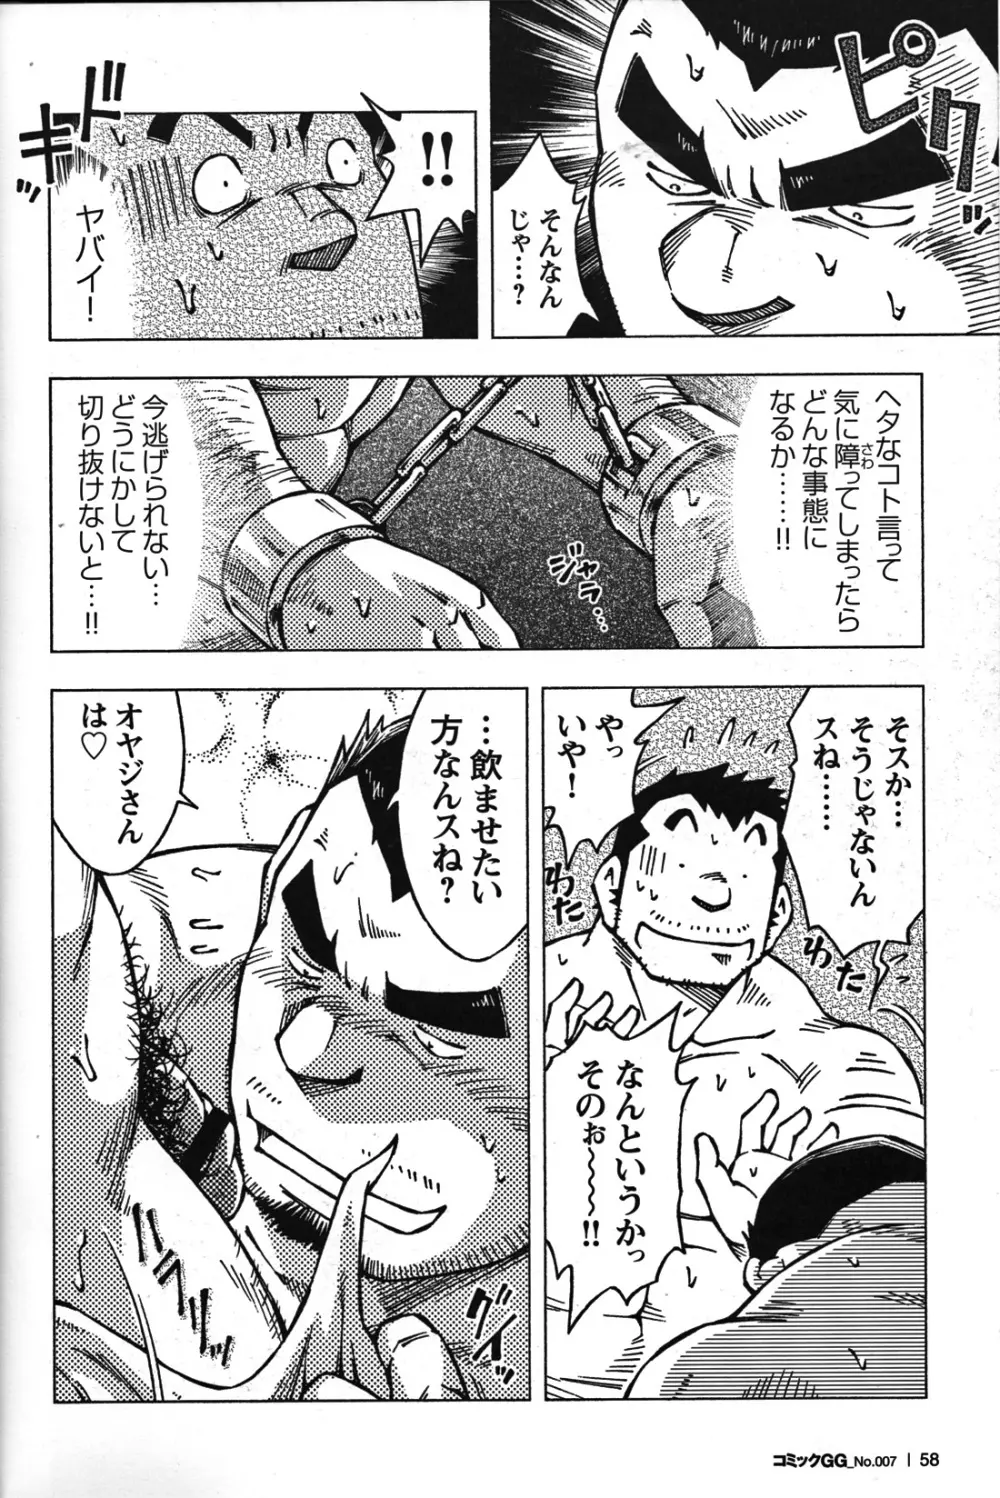 Comic G-men Gaho No.07 55ページ